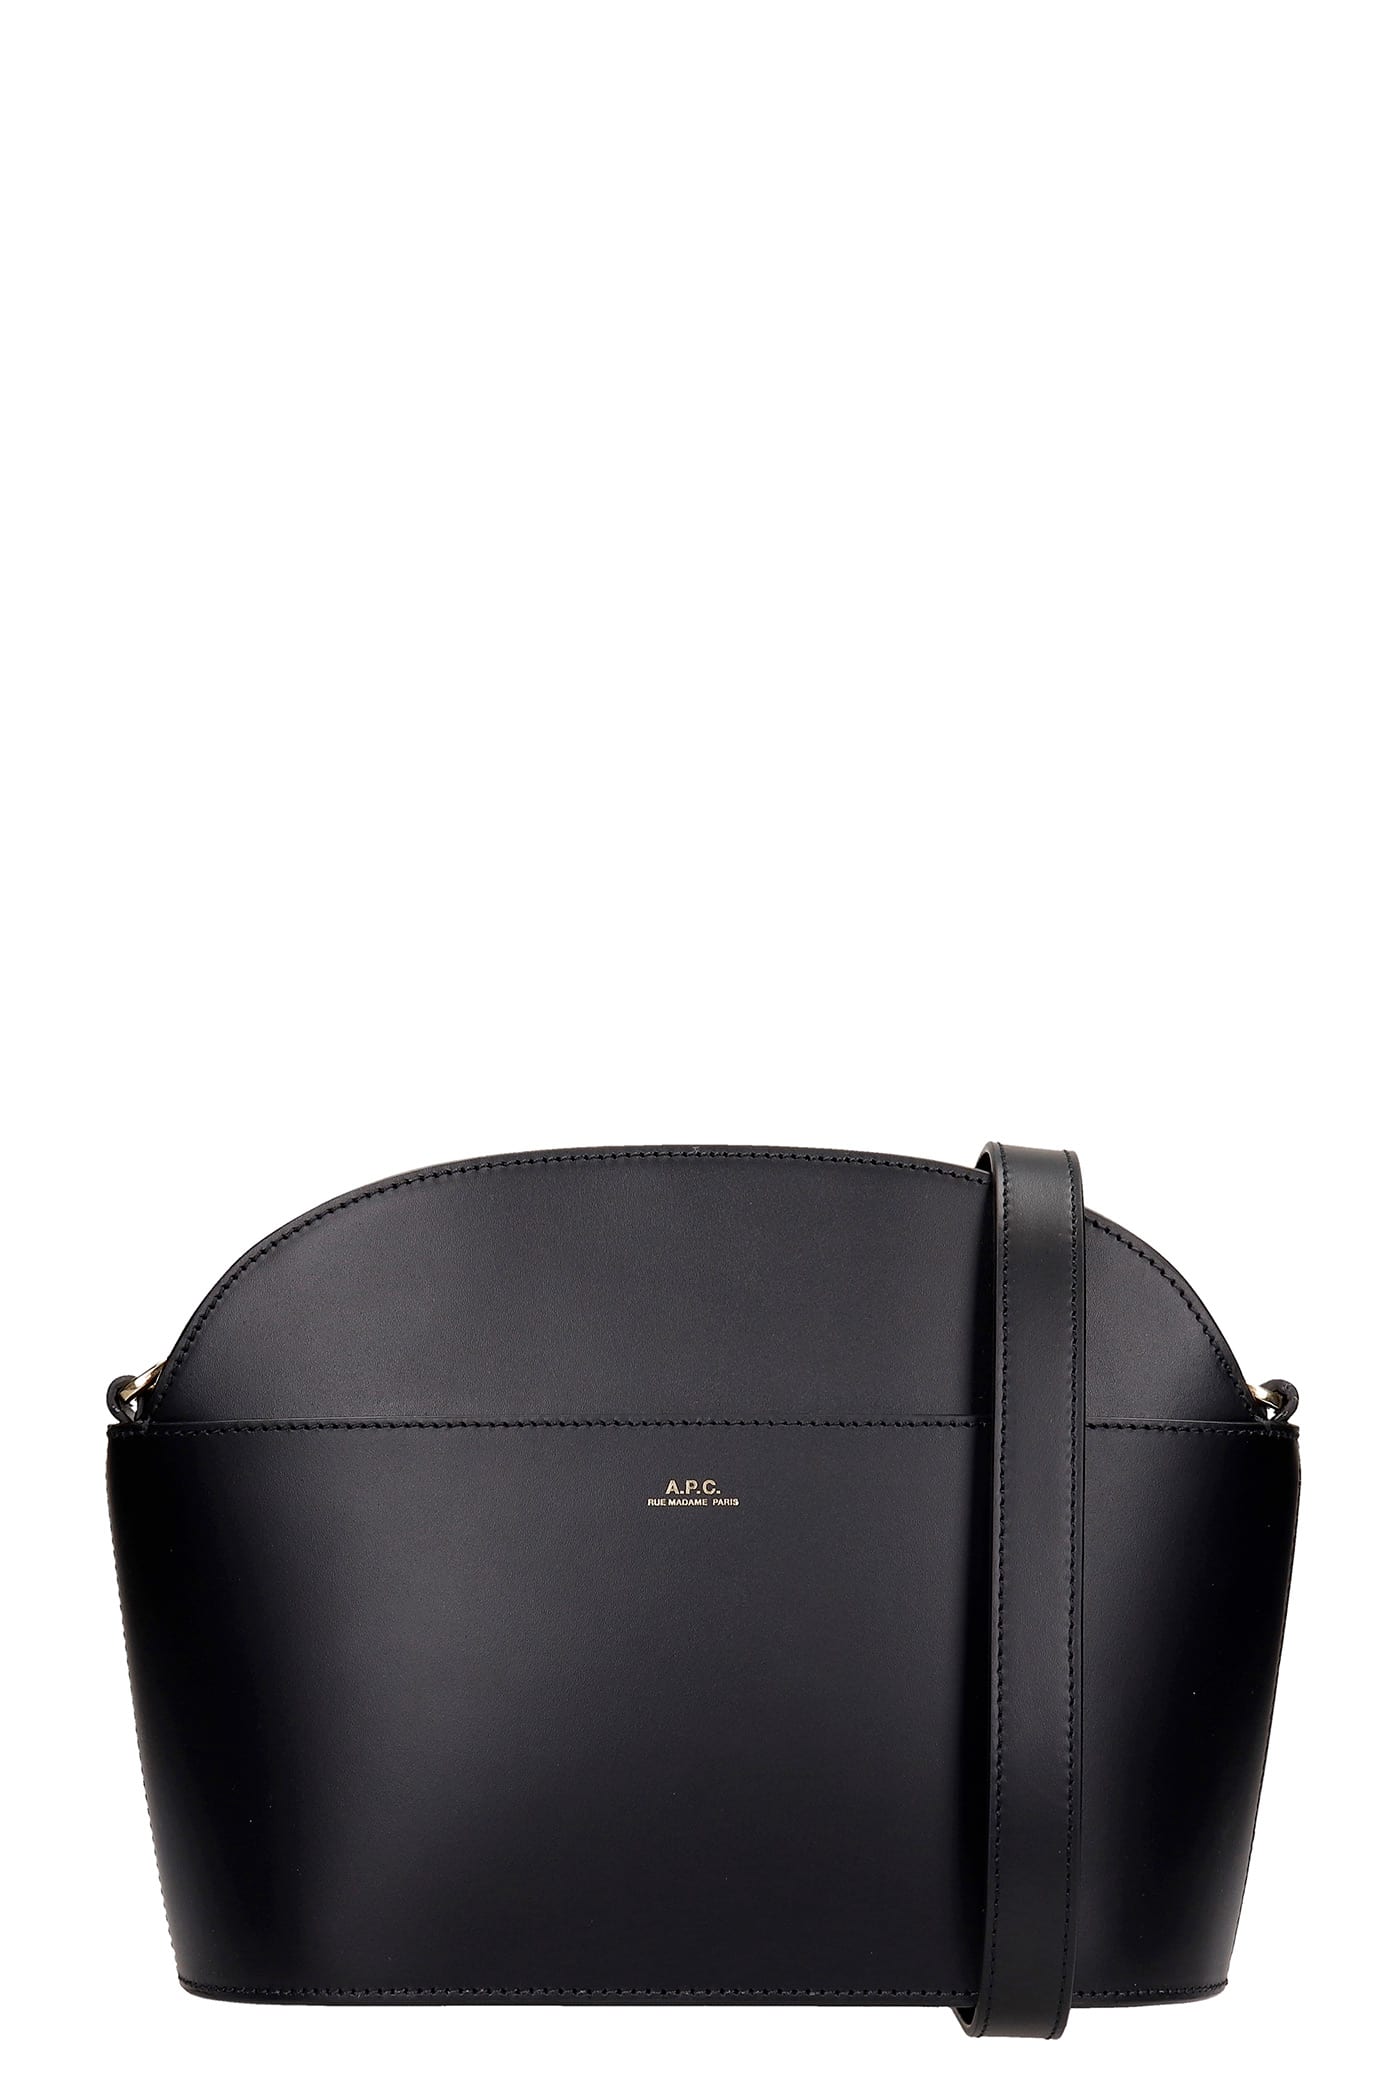 A.P.C. Gabriella Shoulder Bag In Black Leather